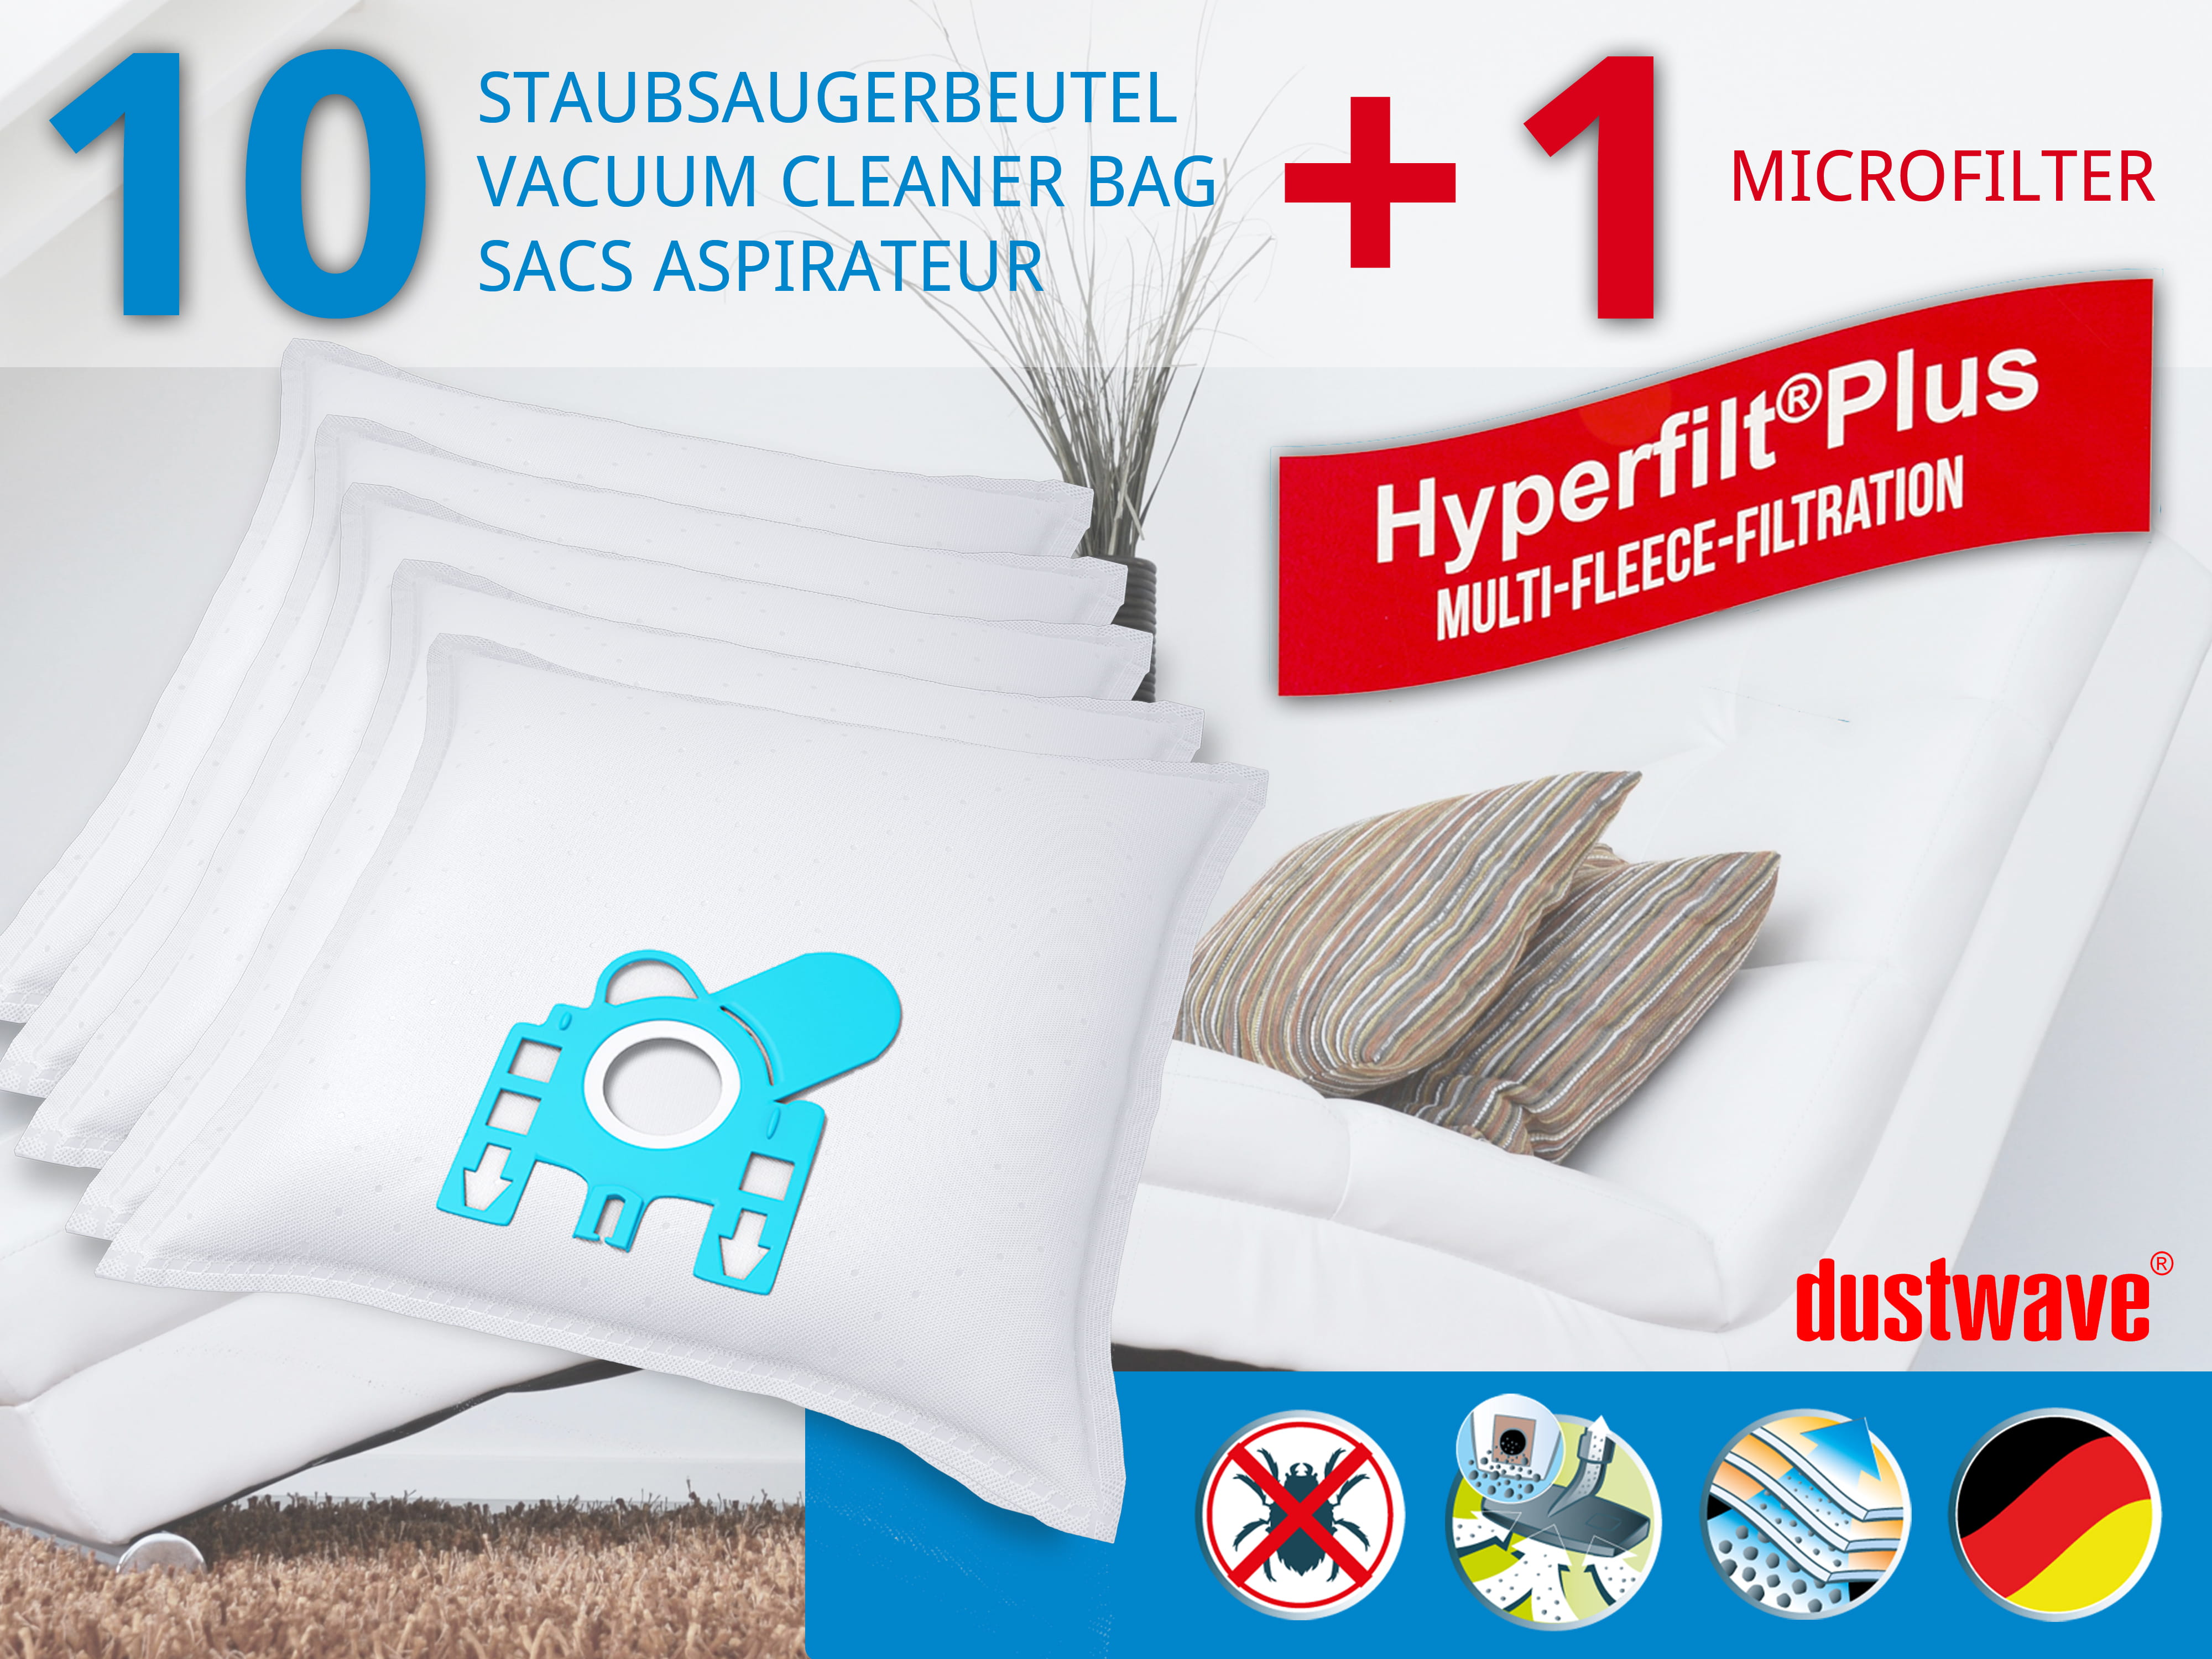 Dustwave® 10 Staubsaugerbeutel für Hoover T6071 / TRT6071 - hocheffizient, mehrlagiges Mikrovlies mit Hygieneverschluss - Made in Germany